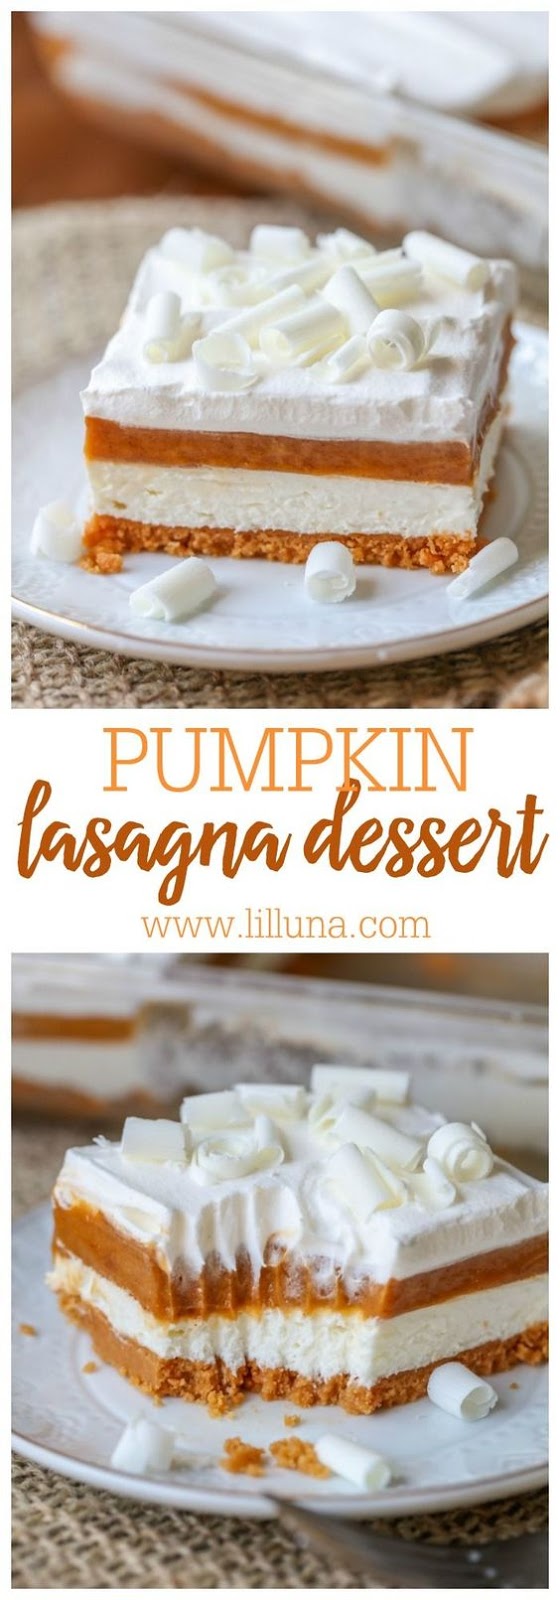 Pumpkin Lasagna - Whole30 Dessert Recipes